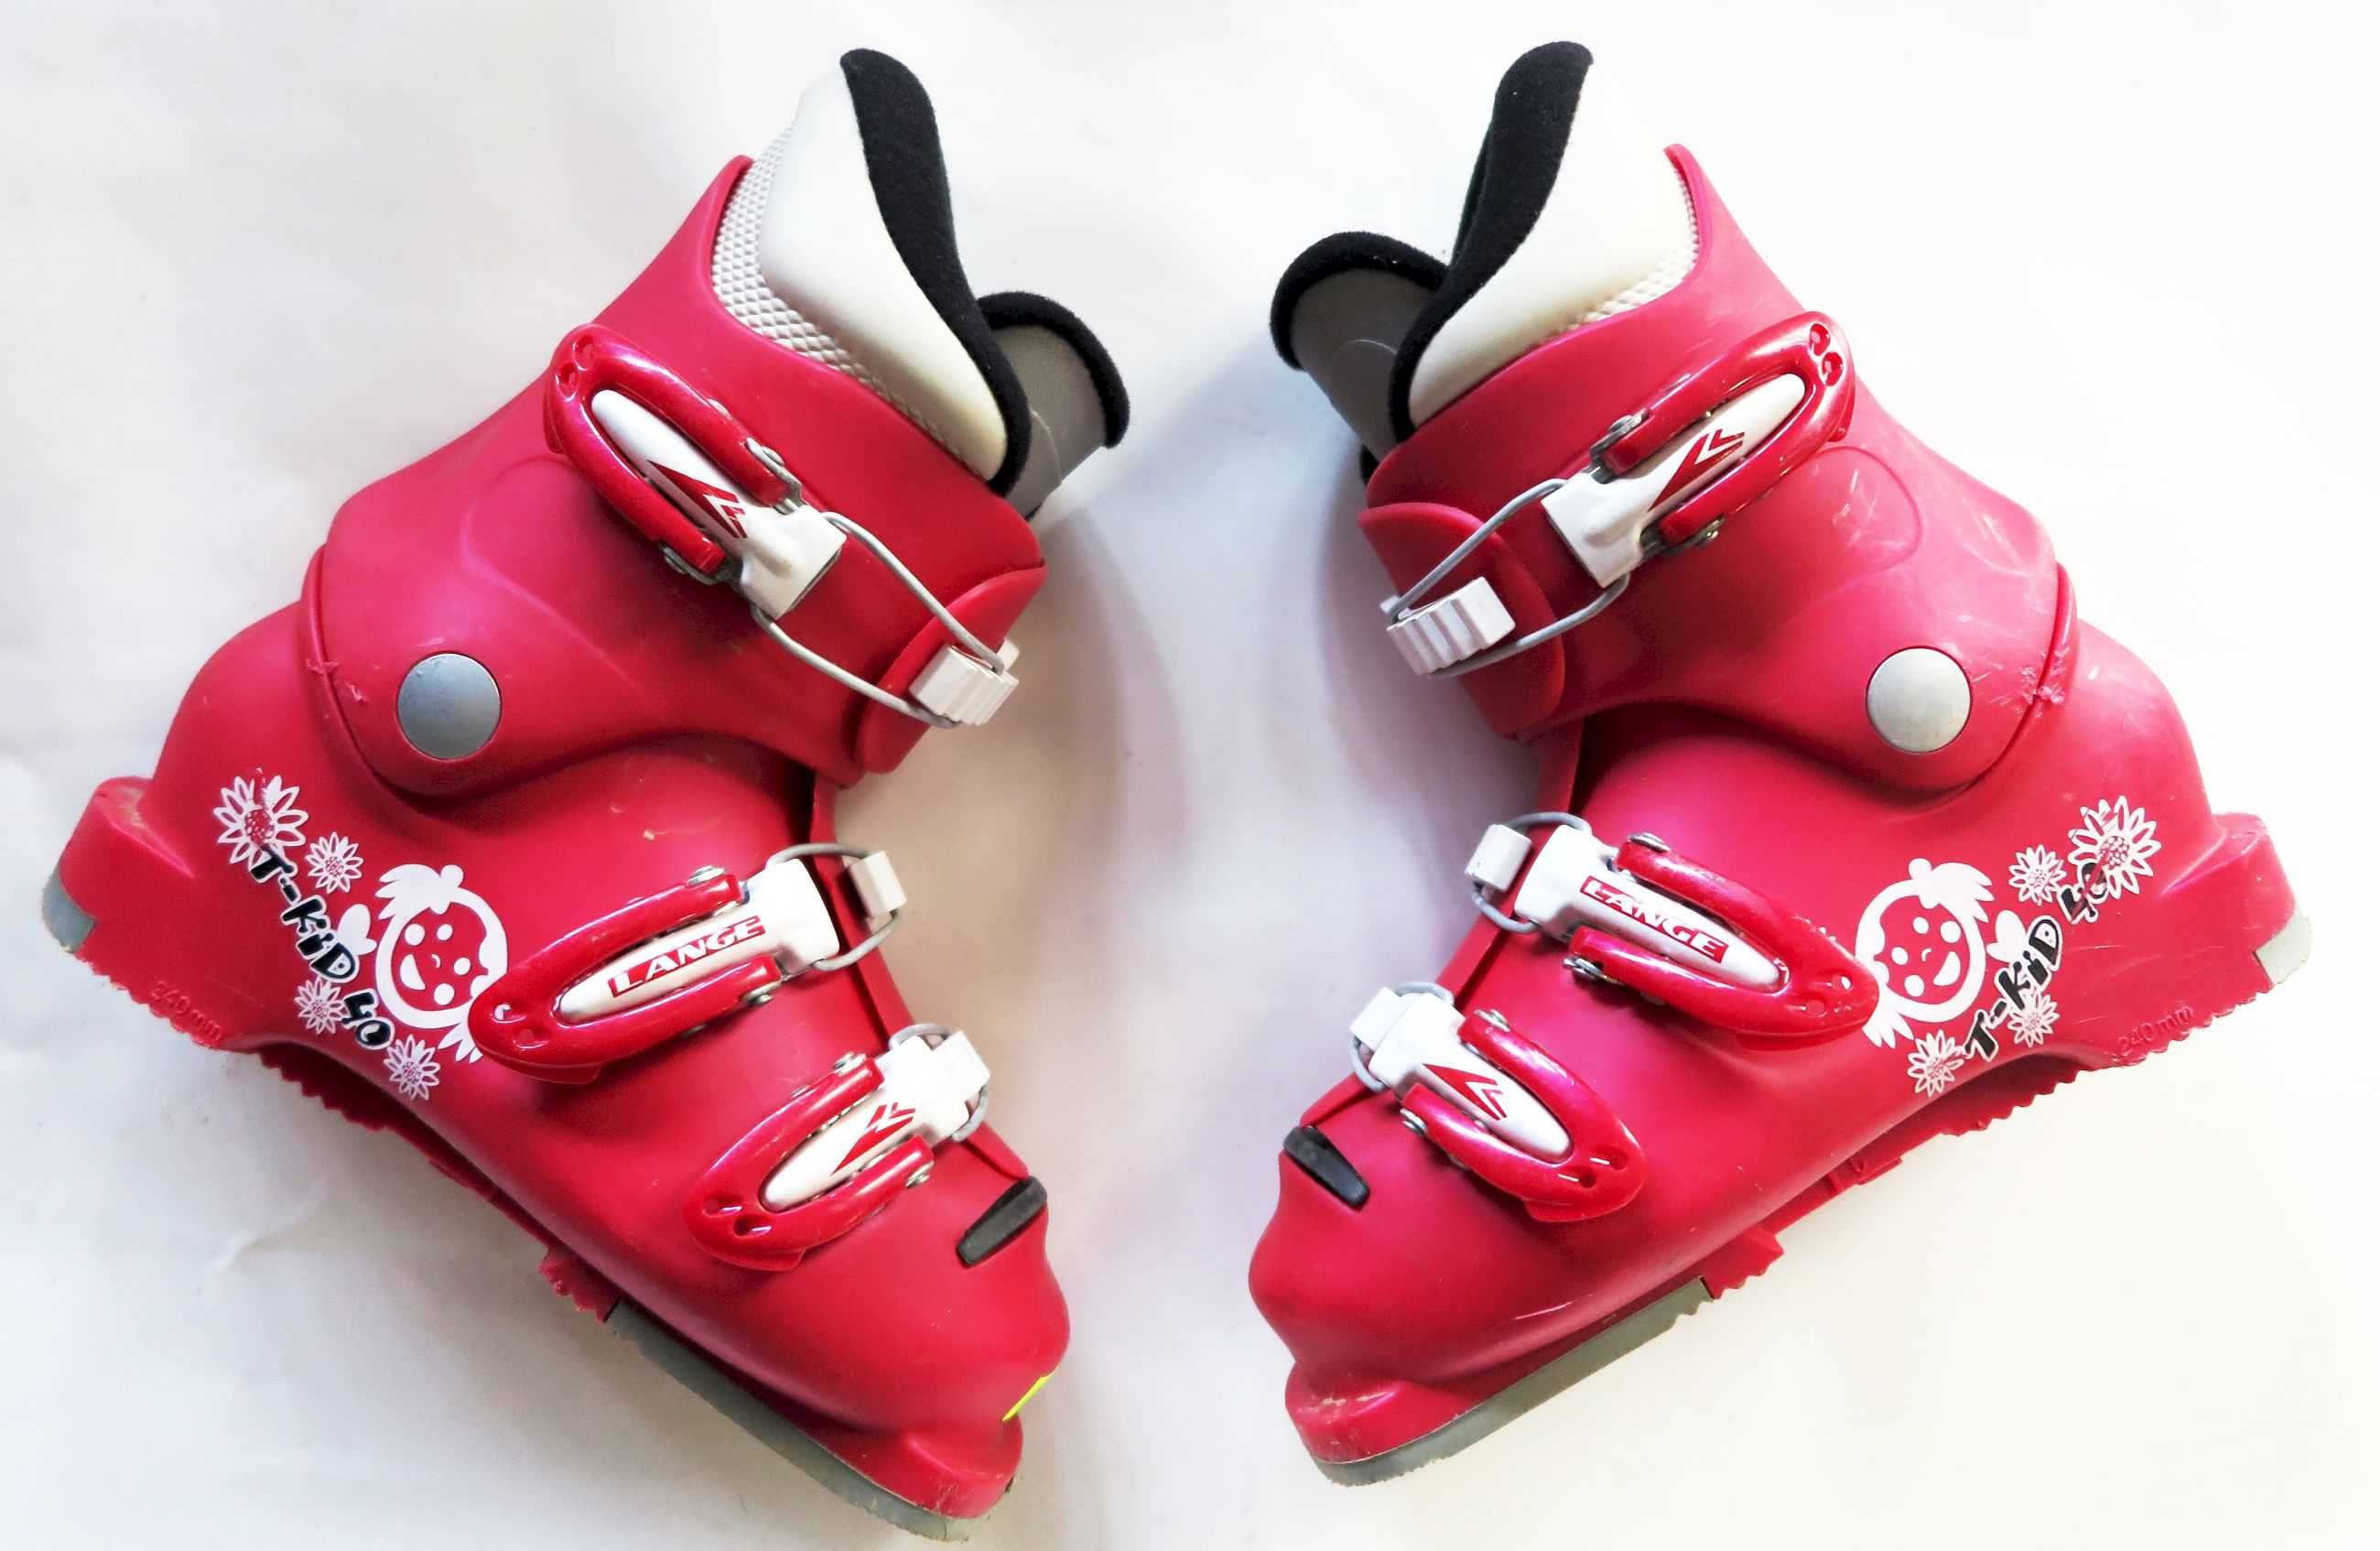 buty narciarskie LANGE 19,5 31,0 dziecięce używane różowe